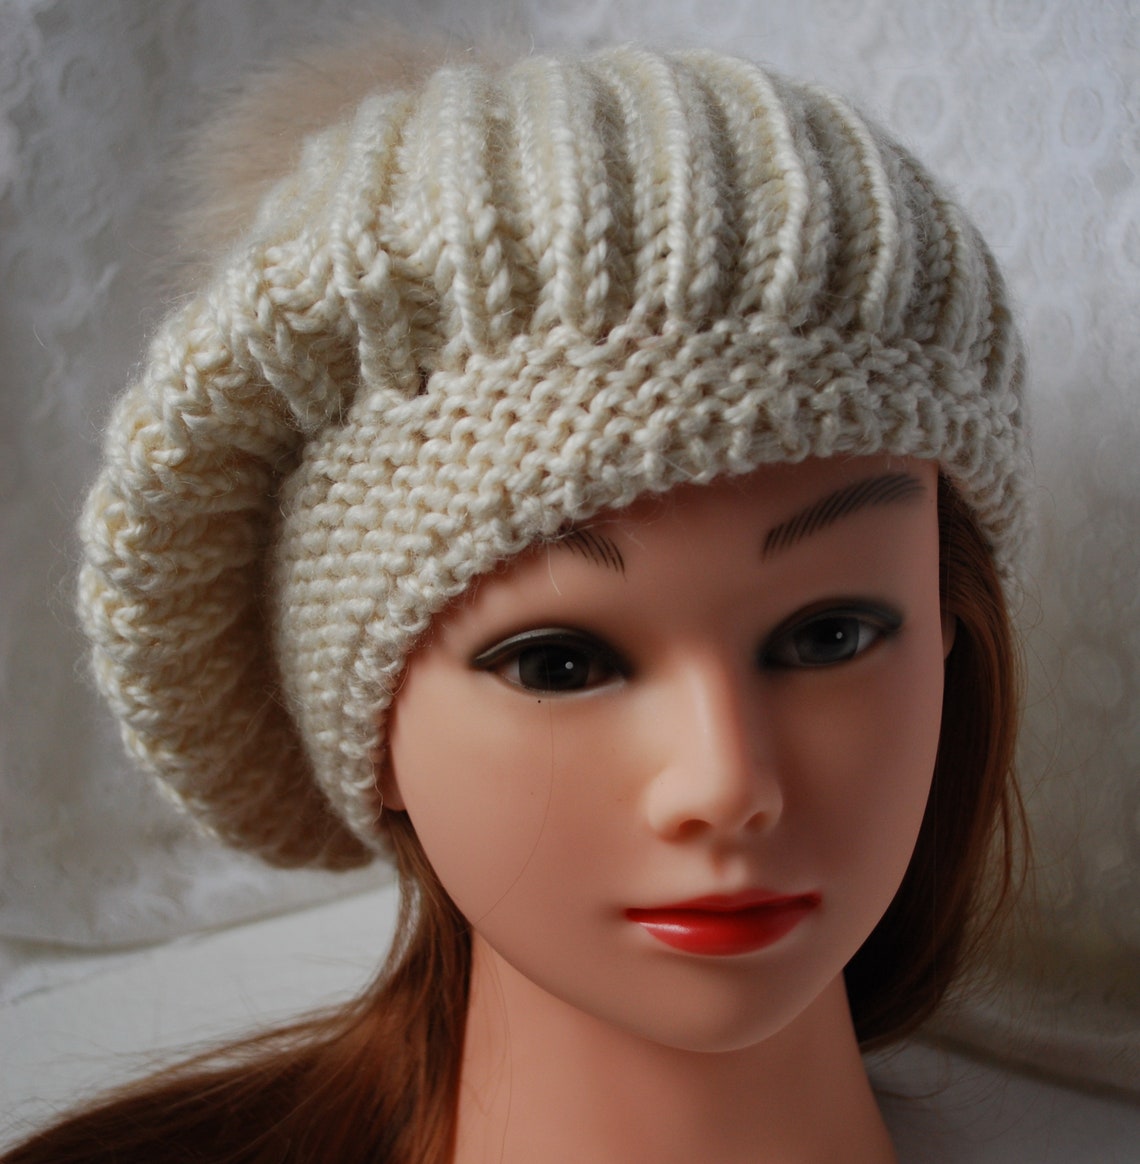 Ivory Knit Warm Beanie Hat, Knit Warm Pom Pom Beanie, Winter Pom Pom ...